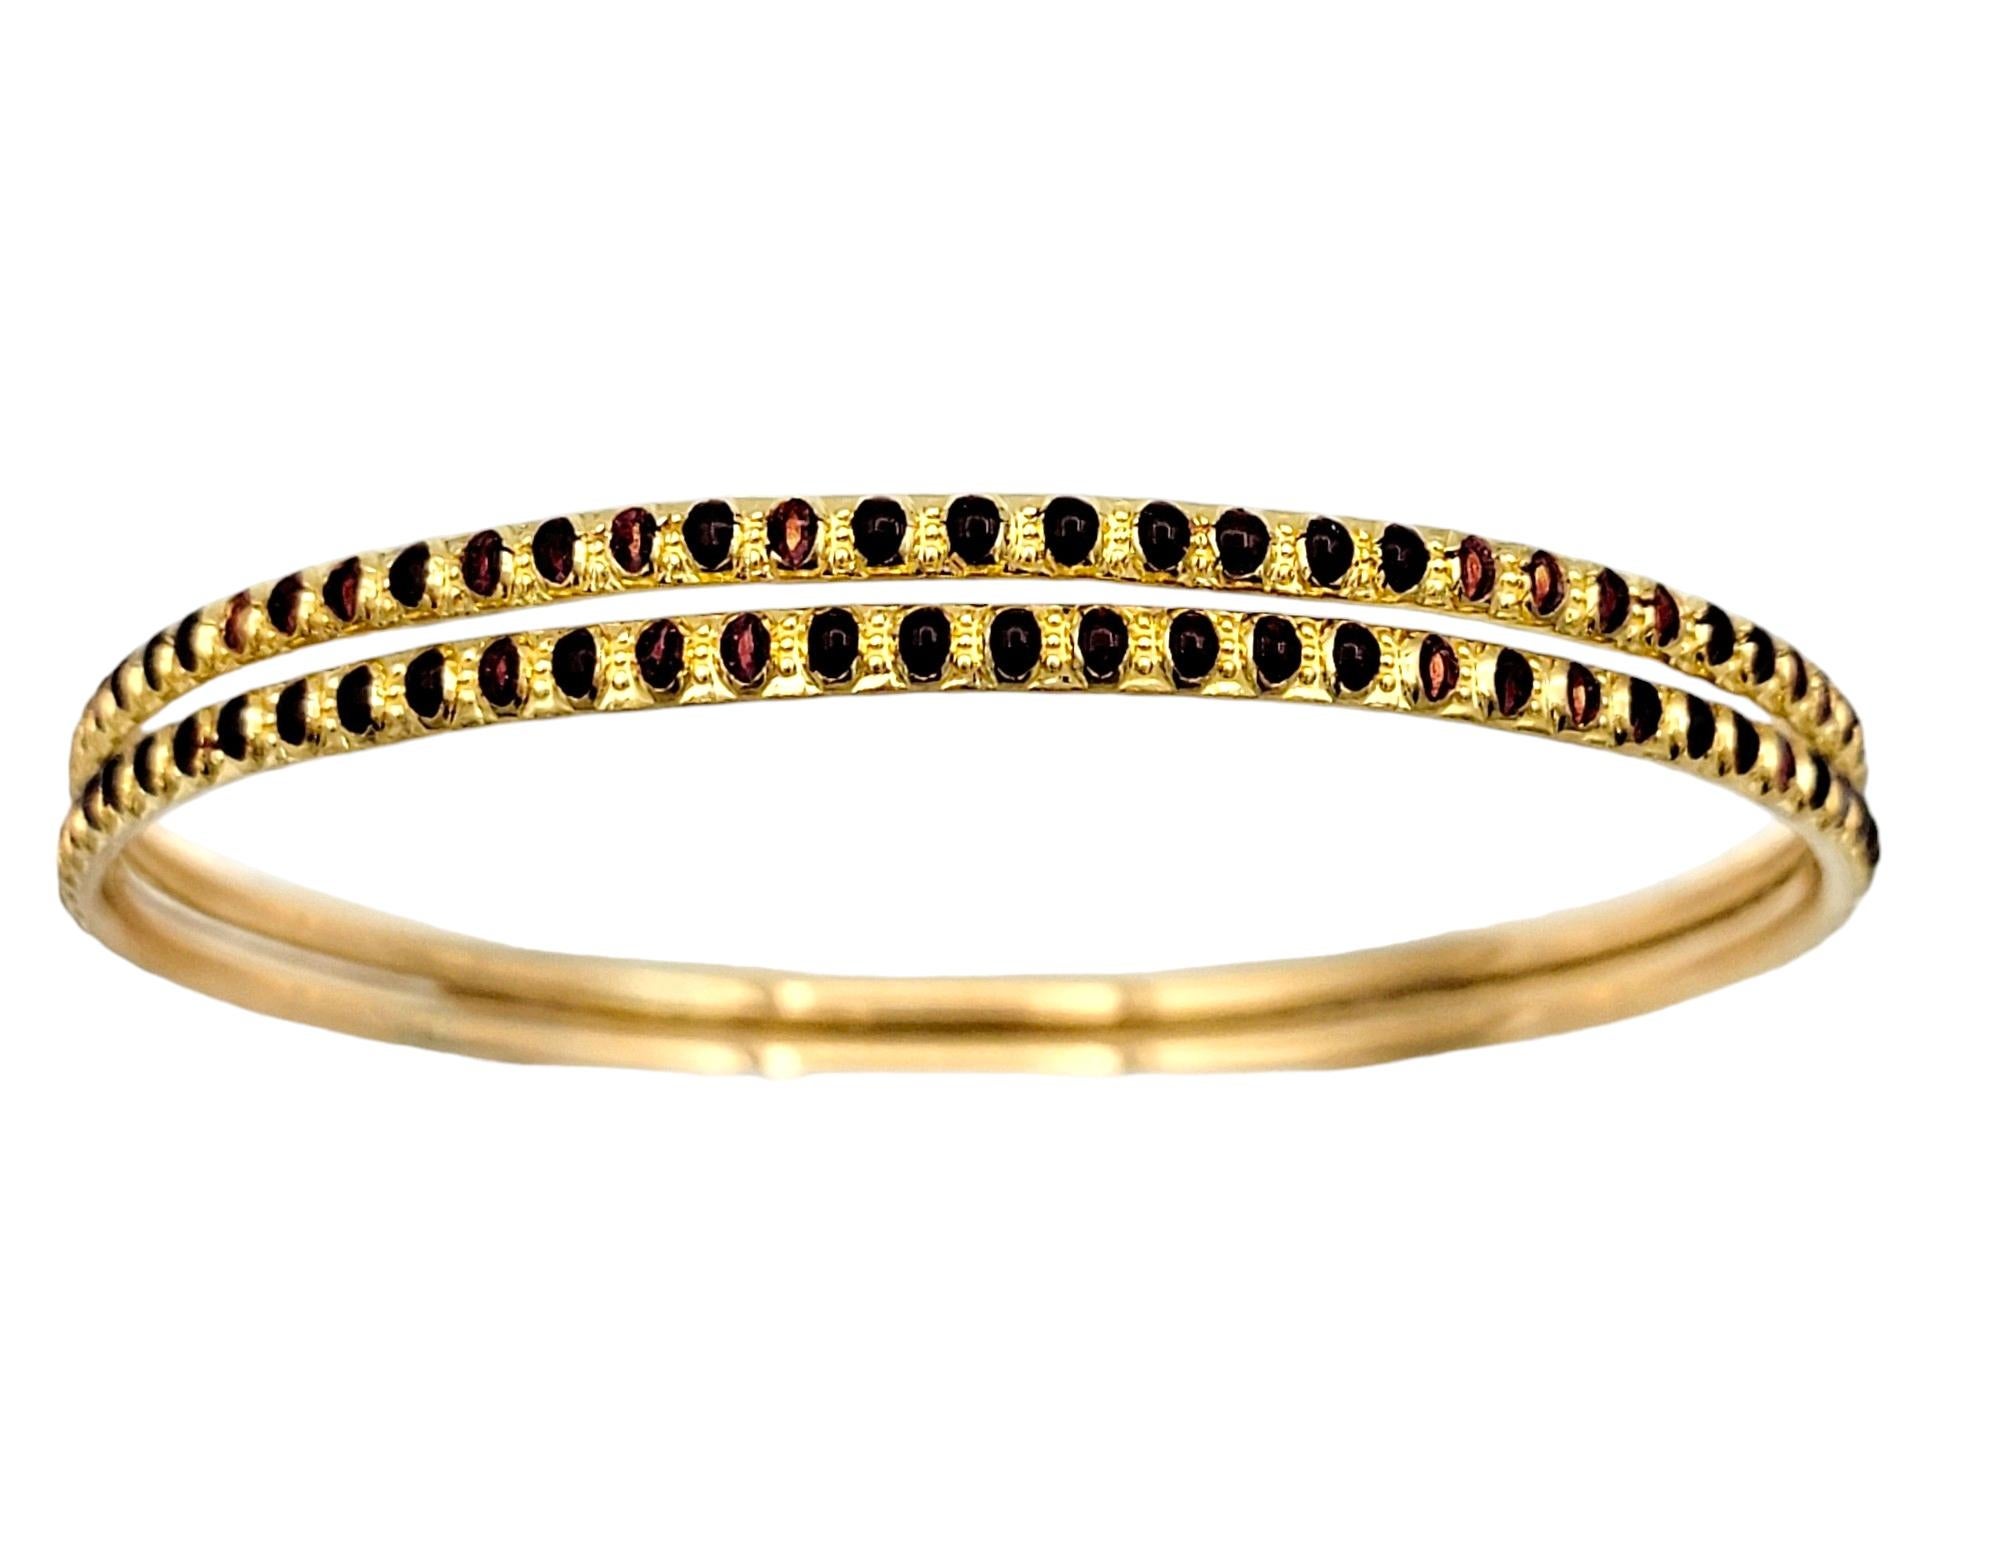 Voici un superbe ensemble de deux bracelets étroits superposés en luxueux or jaune 22 carats. Ces pièces identiques sont ornées d'un fascinant motif en pointillés d'émail rouge foncé qui s'étend sur toute la longueur des bracelets, ajoutant une